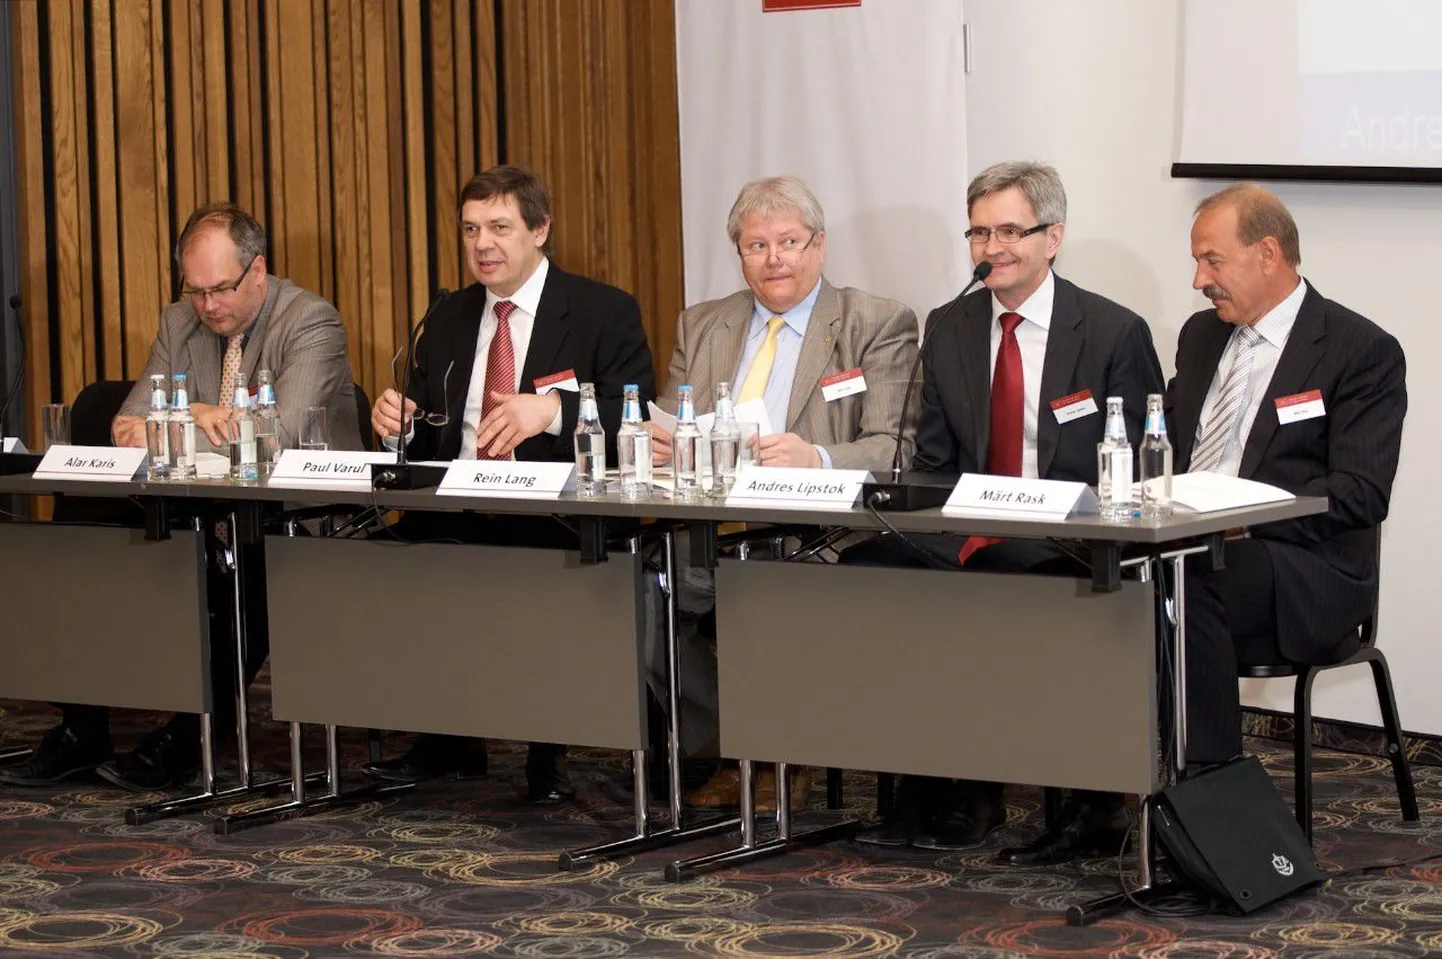 Alar Karis (vasakult), Paul Varul, Rein Lang, Andres Lipstok ja Märt Rask Tartus peetud konverentsil